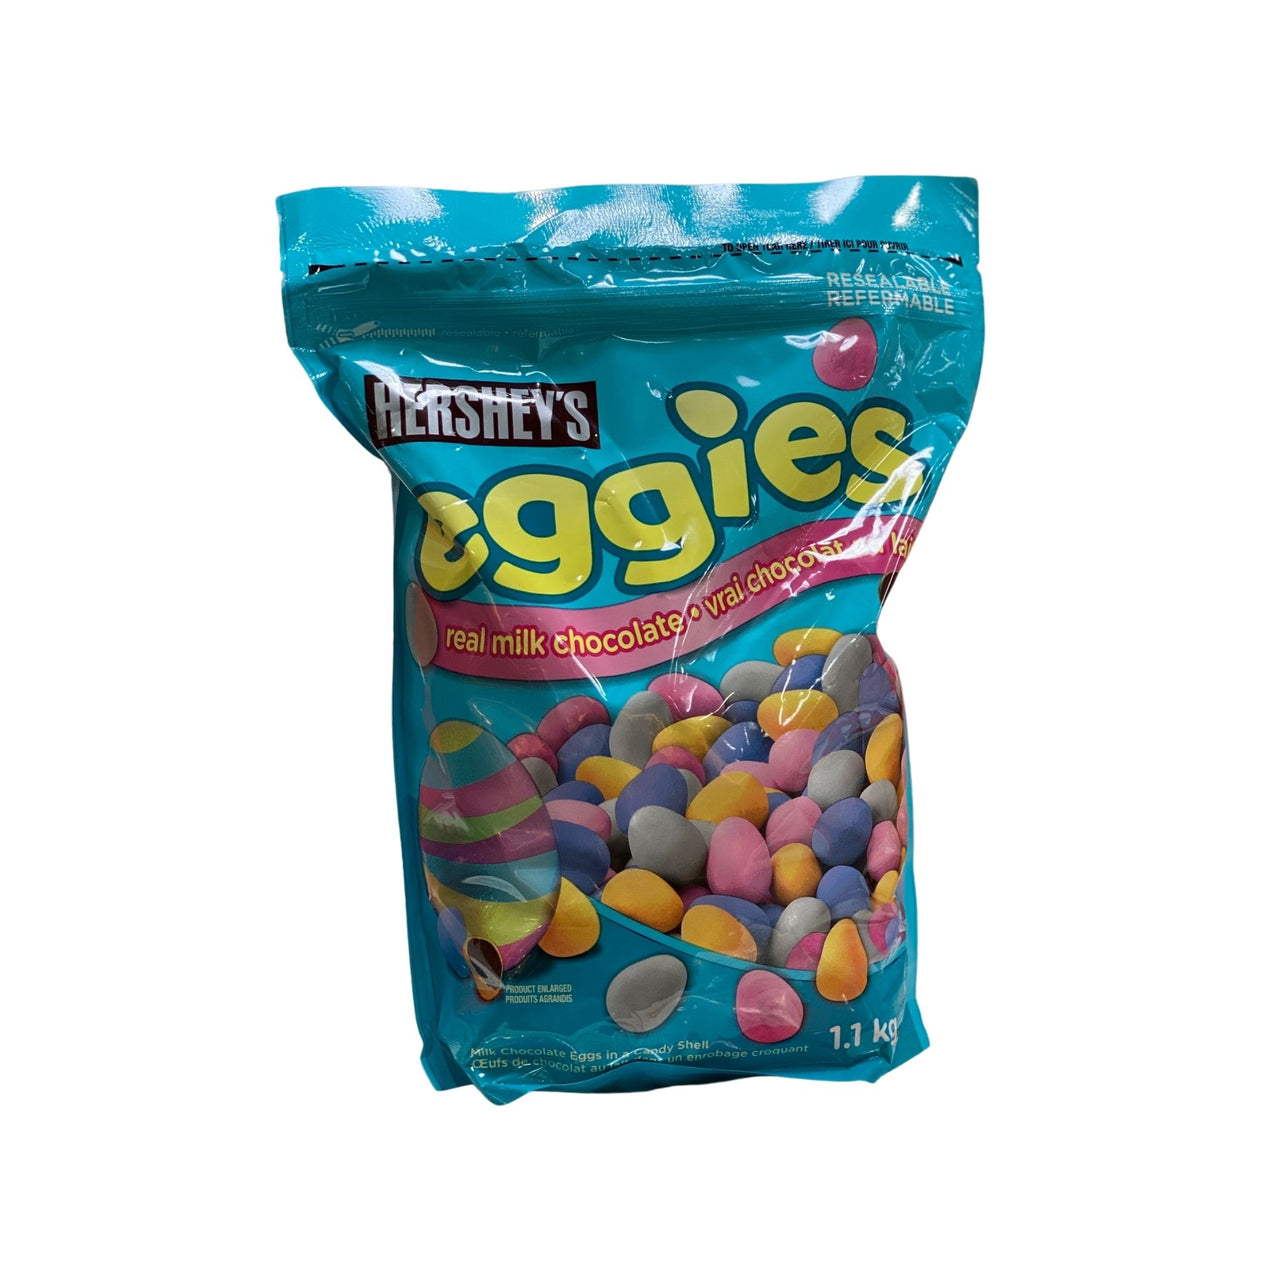 Image of Hershey's Eggies 1.1kg